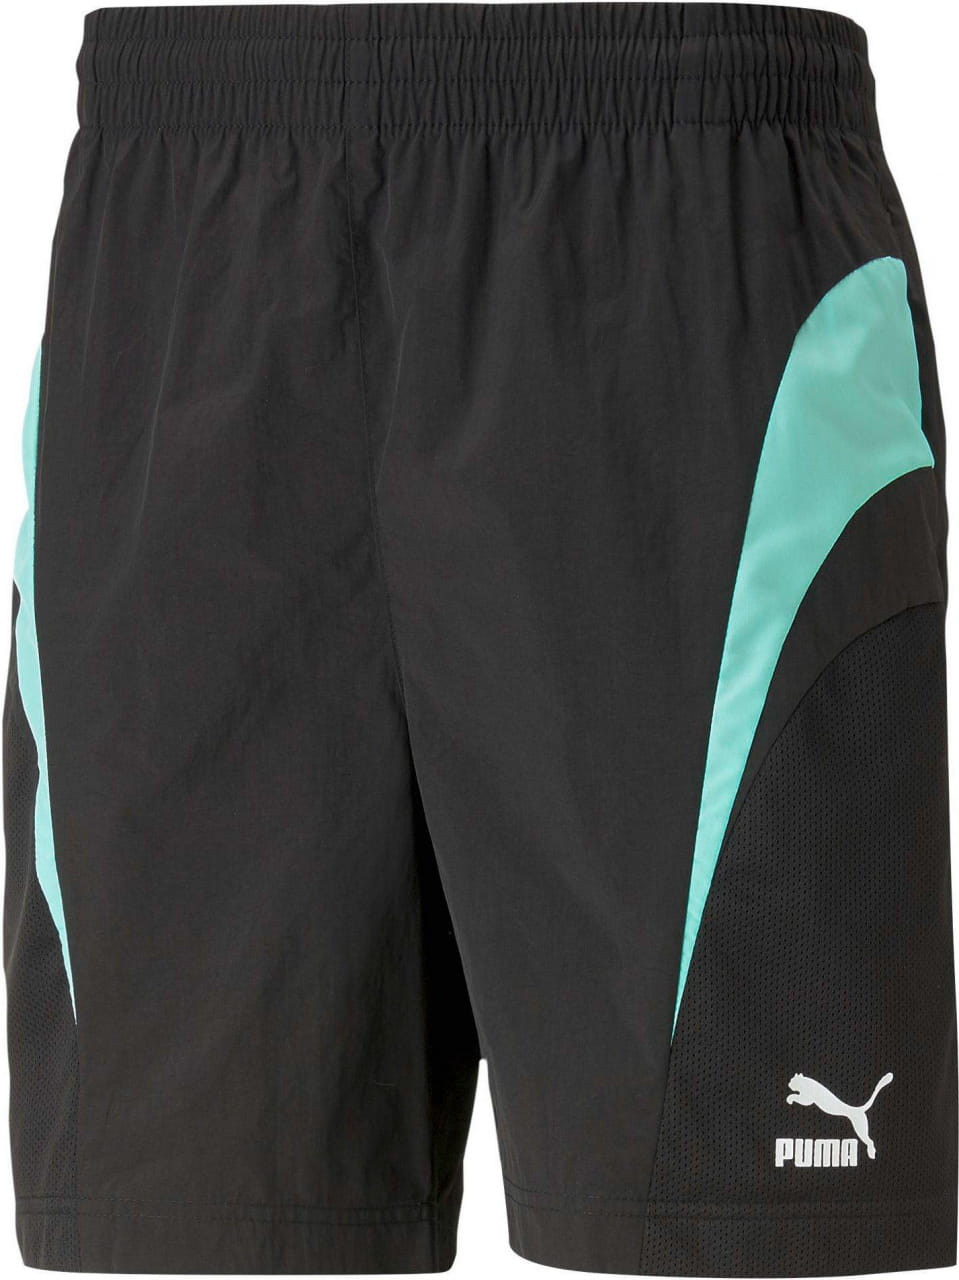 Sportshorts für Männer Puma Swxp Shorts